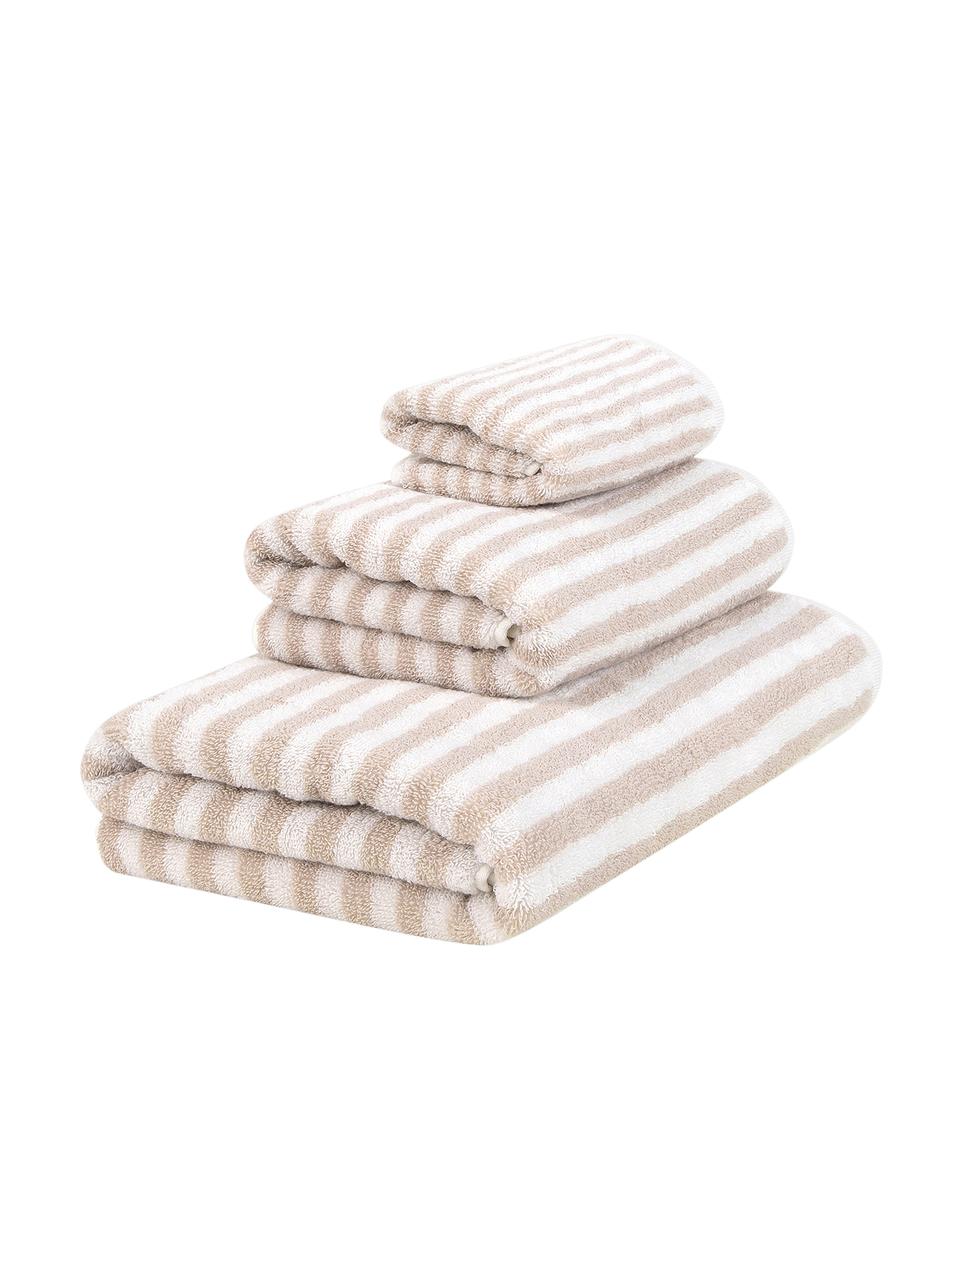 Set 3 asciugamani a righe Viola, Sabbia, bianco crema, Set in varie misure